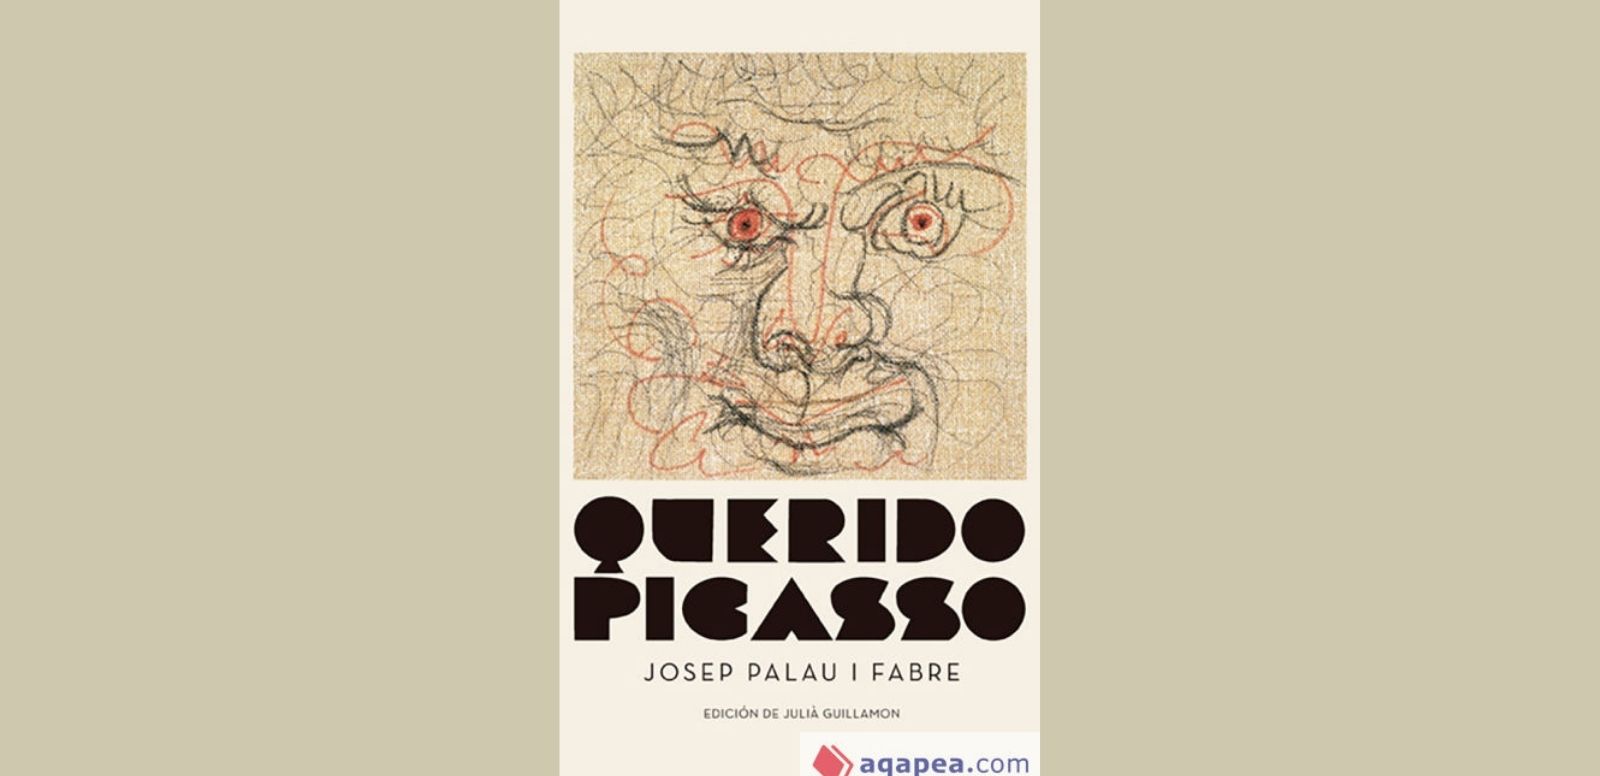 Josep Palau i Fabre "Querido Picasso"